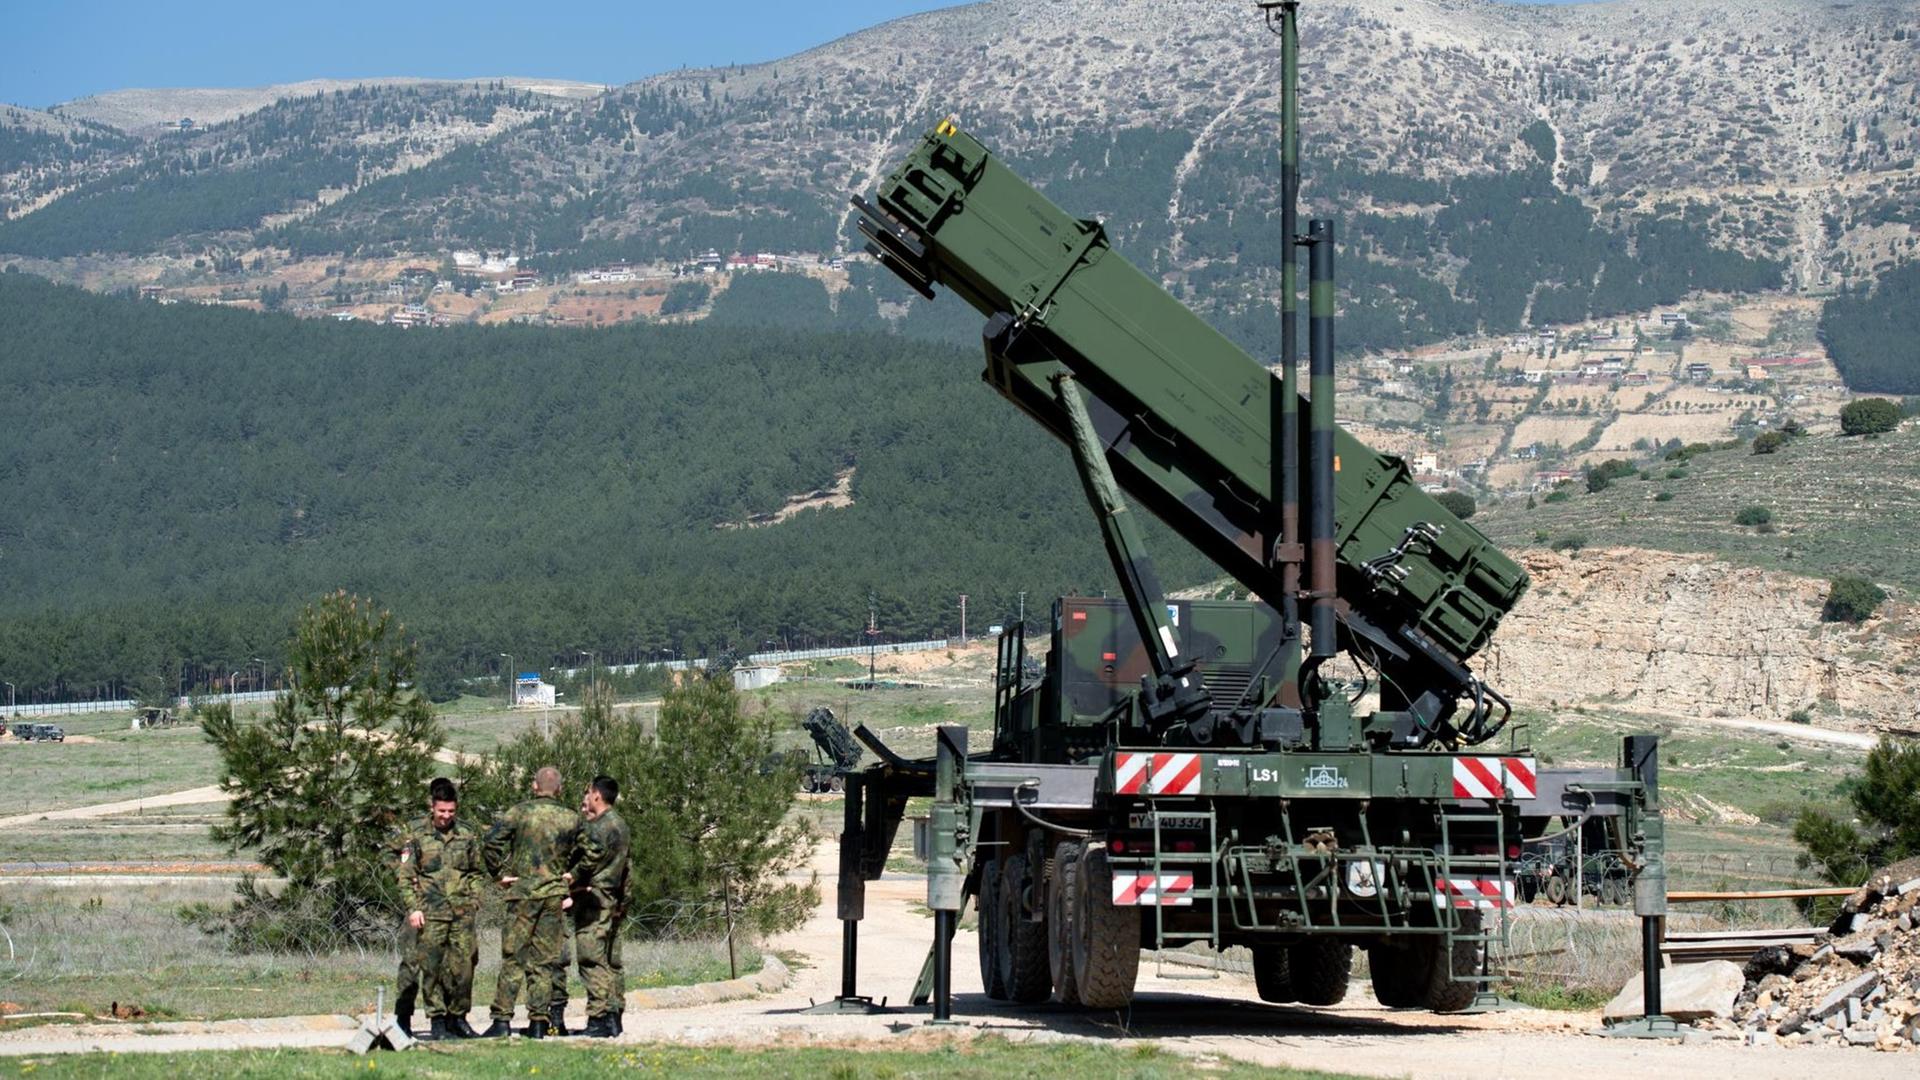 Deutsche Soldaten stehen neben einem "Patriot"-Raketensystem in Kahramanmaras, Türkei. Im Hintergrund sind Berge zu sehen.